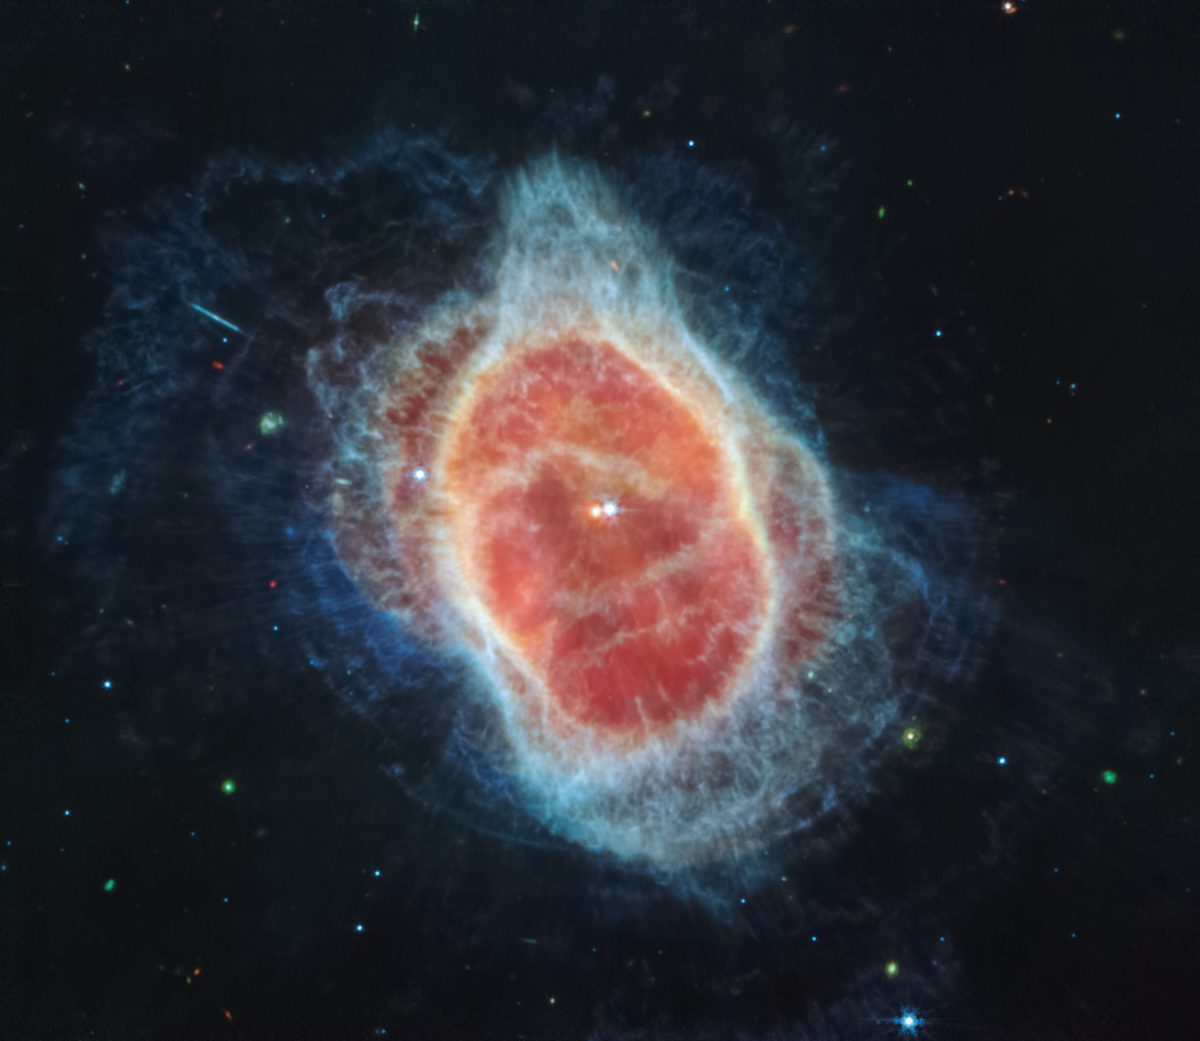 Güney Halka Bulutsusu (NGC 3132) nedir